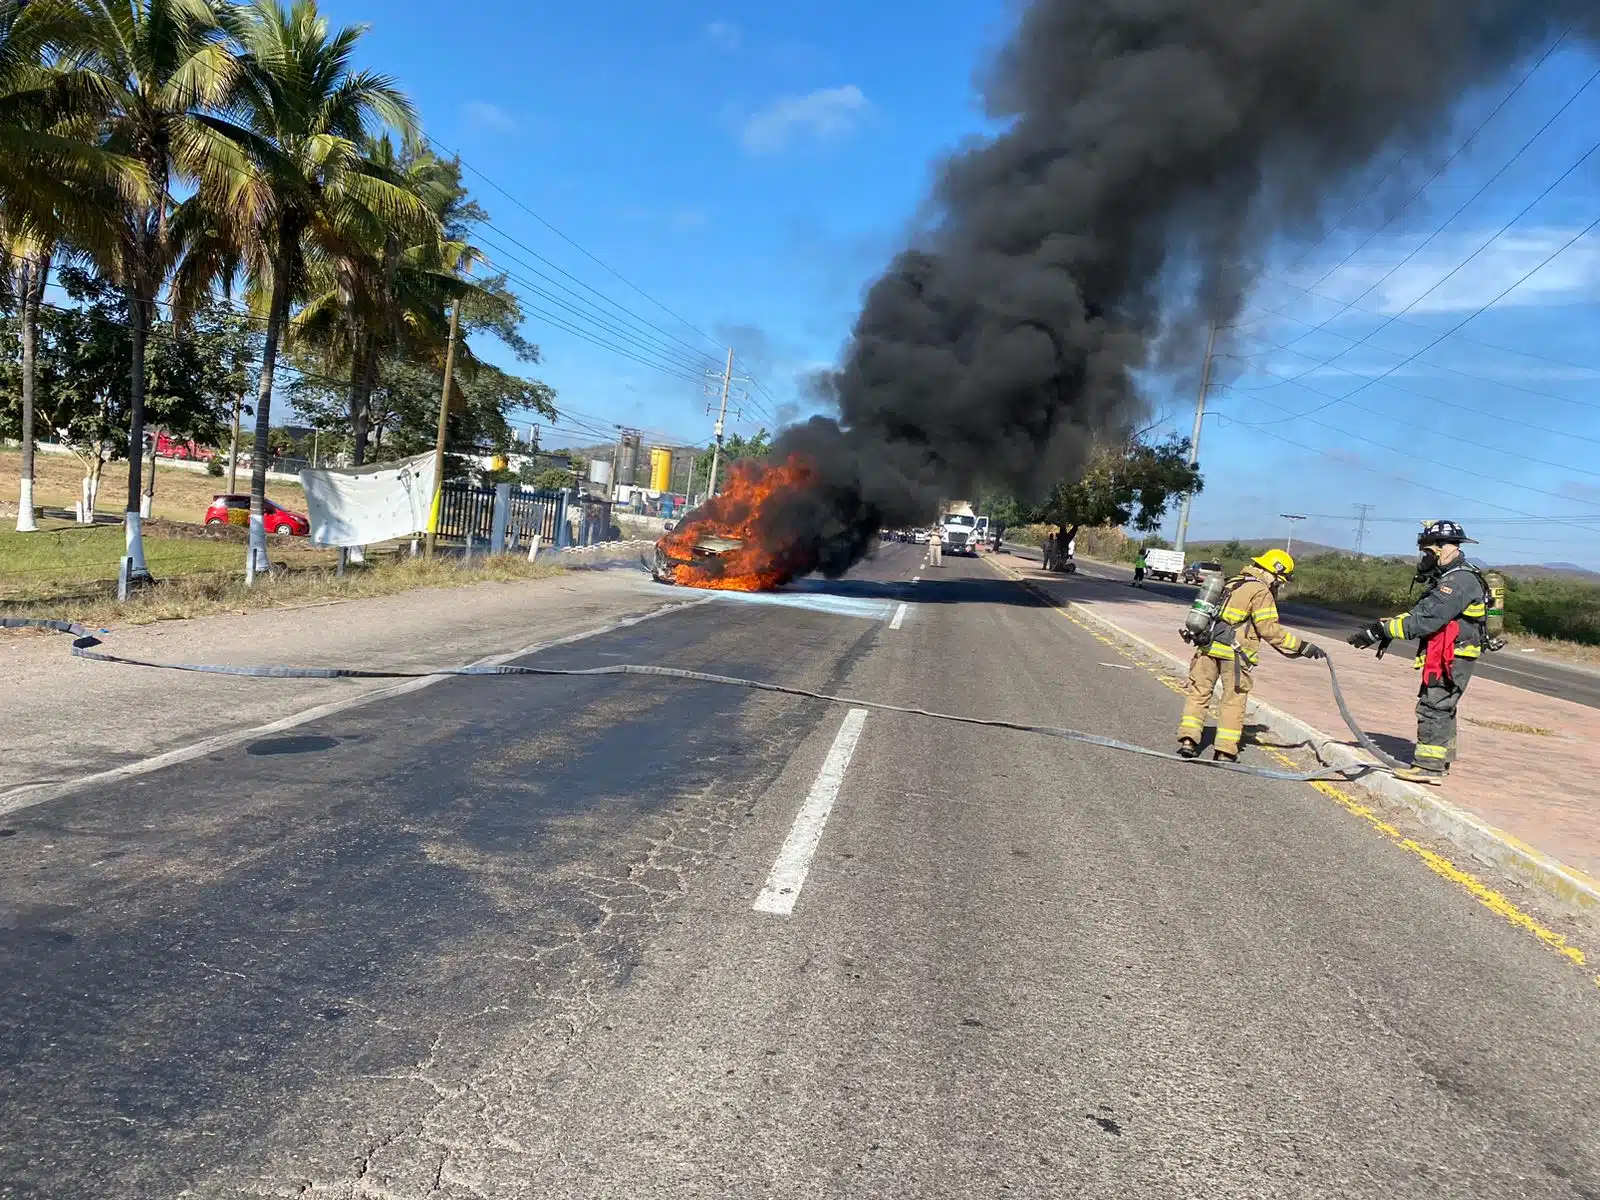 Camioneta incendiándose en una carretera de Mazatlán mientras bomberos se preparan para apagar el fuego